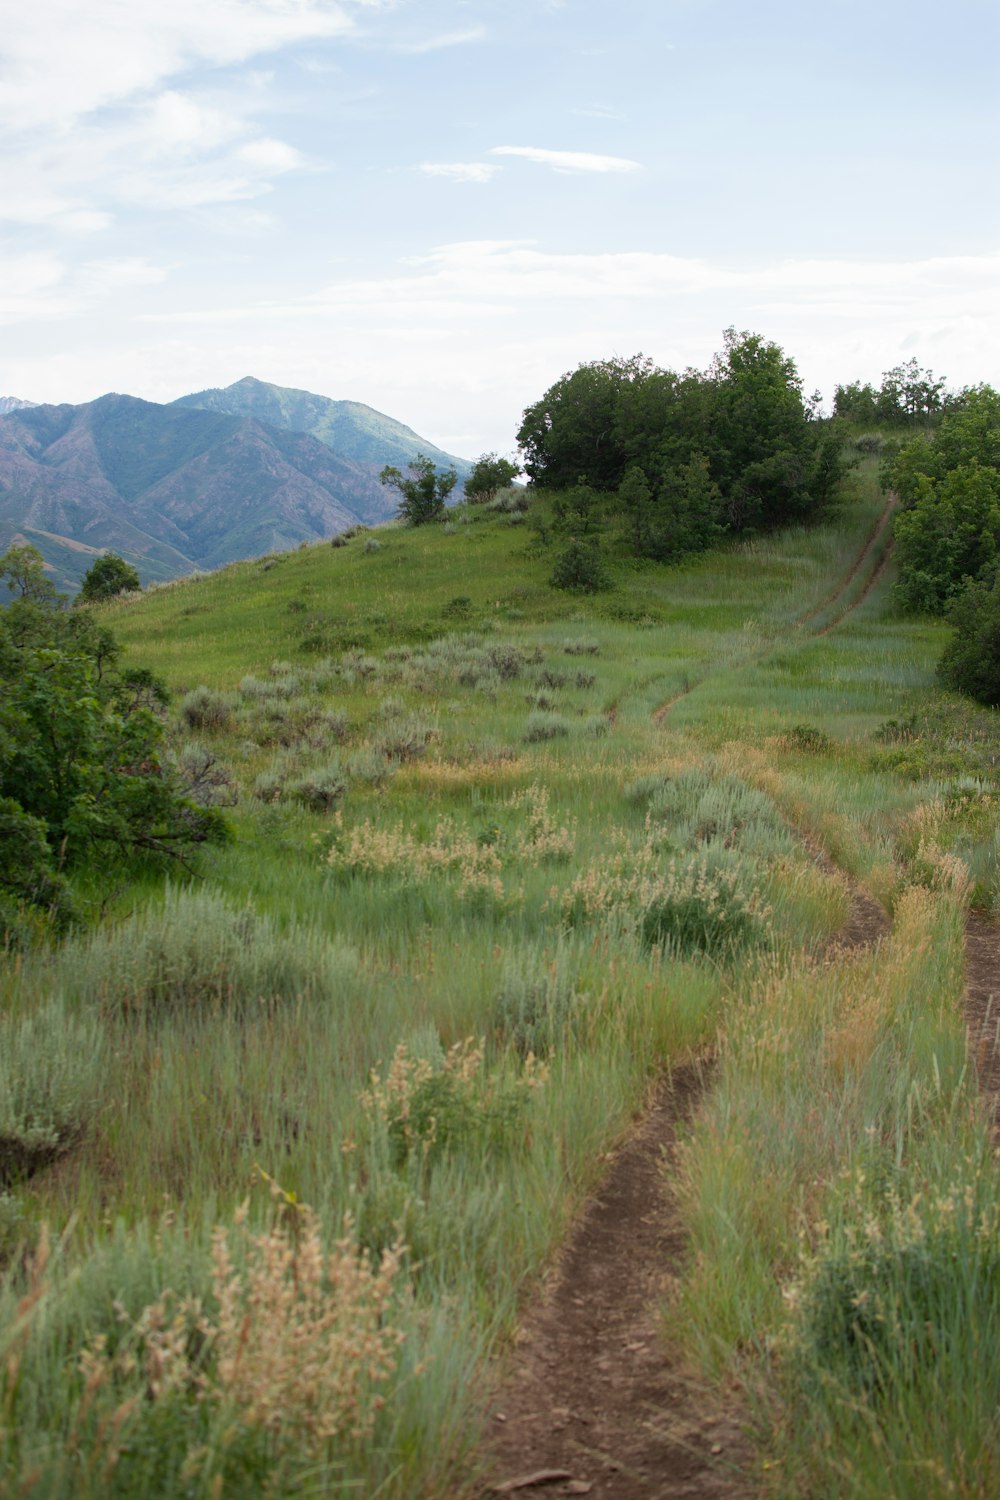 a dirt path going up a grassy hill